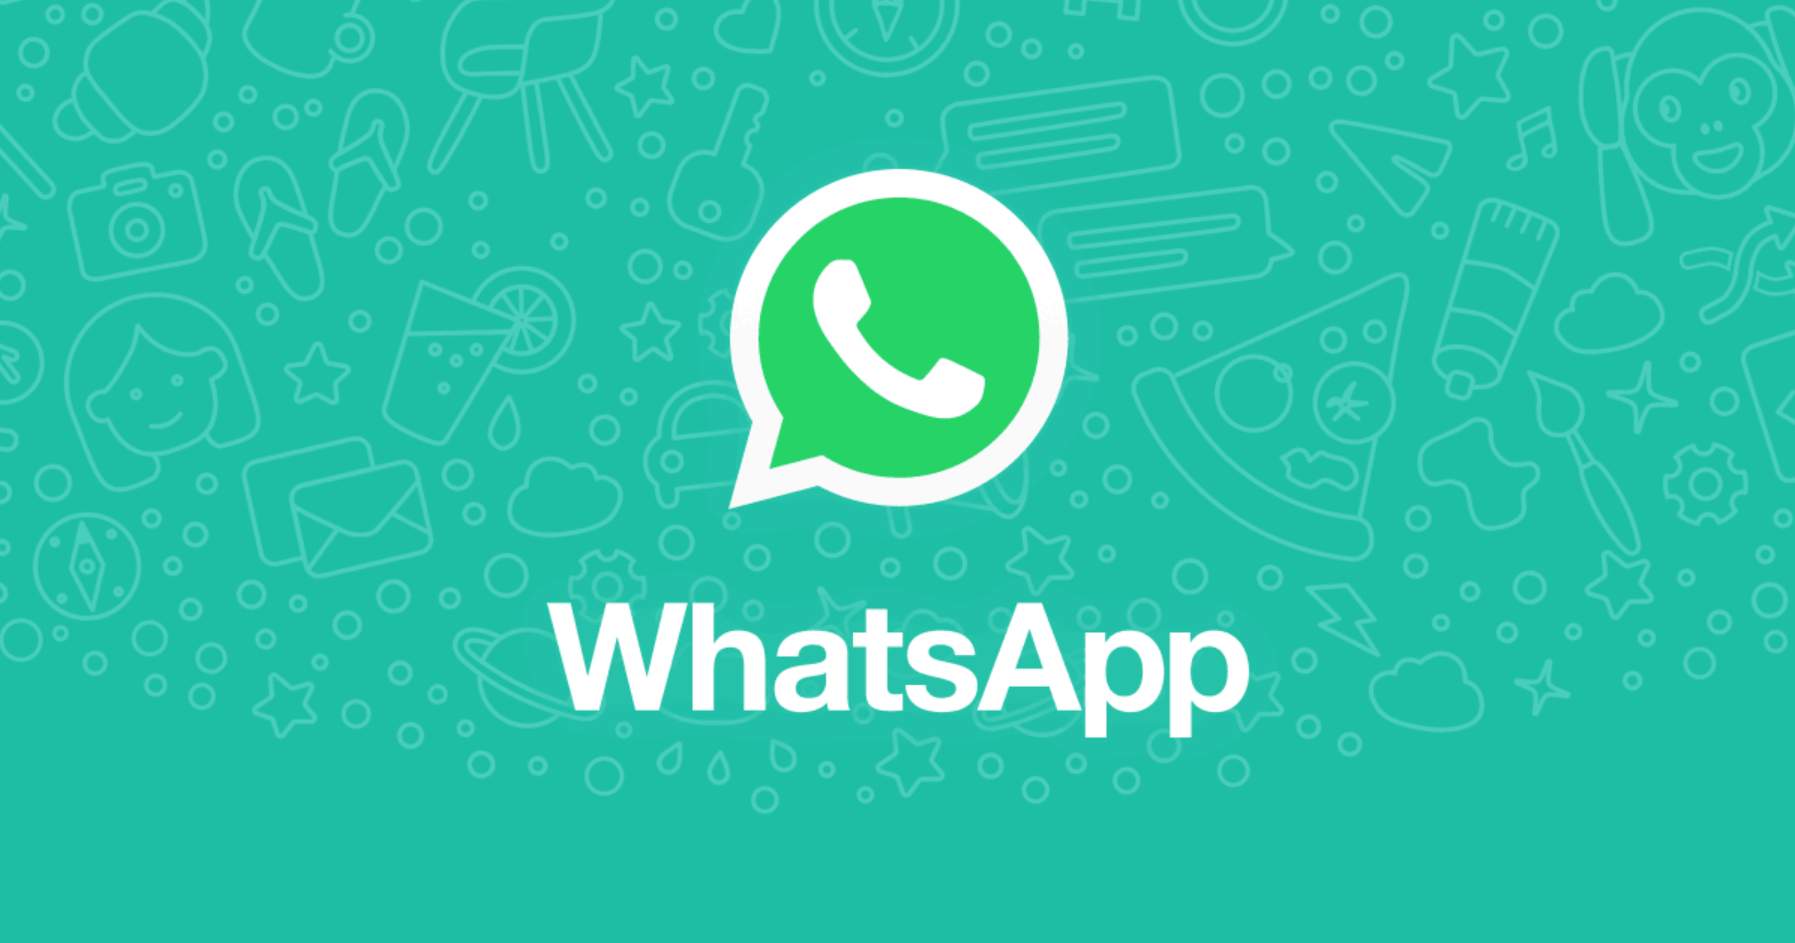 Novidade no WhatsApp MUITO esperada permite controlar mensagens para si mais facilmente; entenda